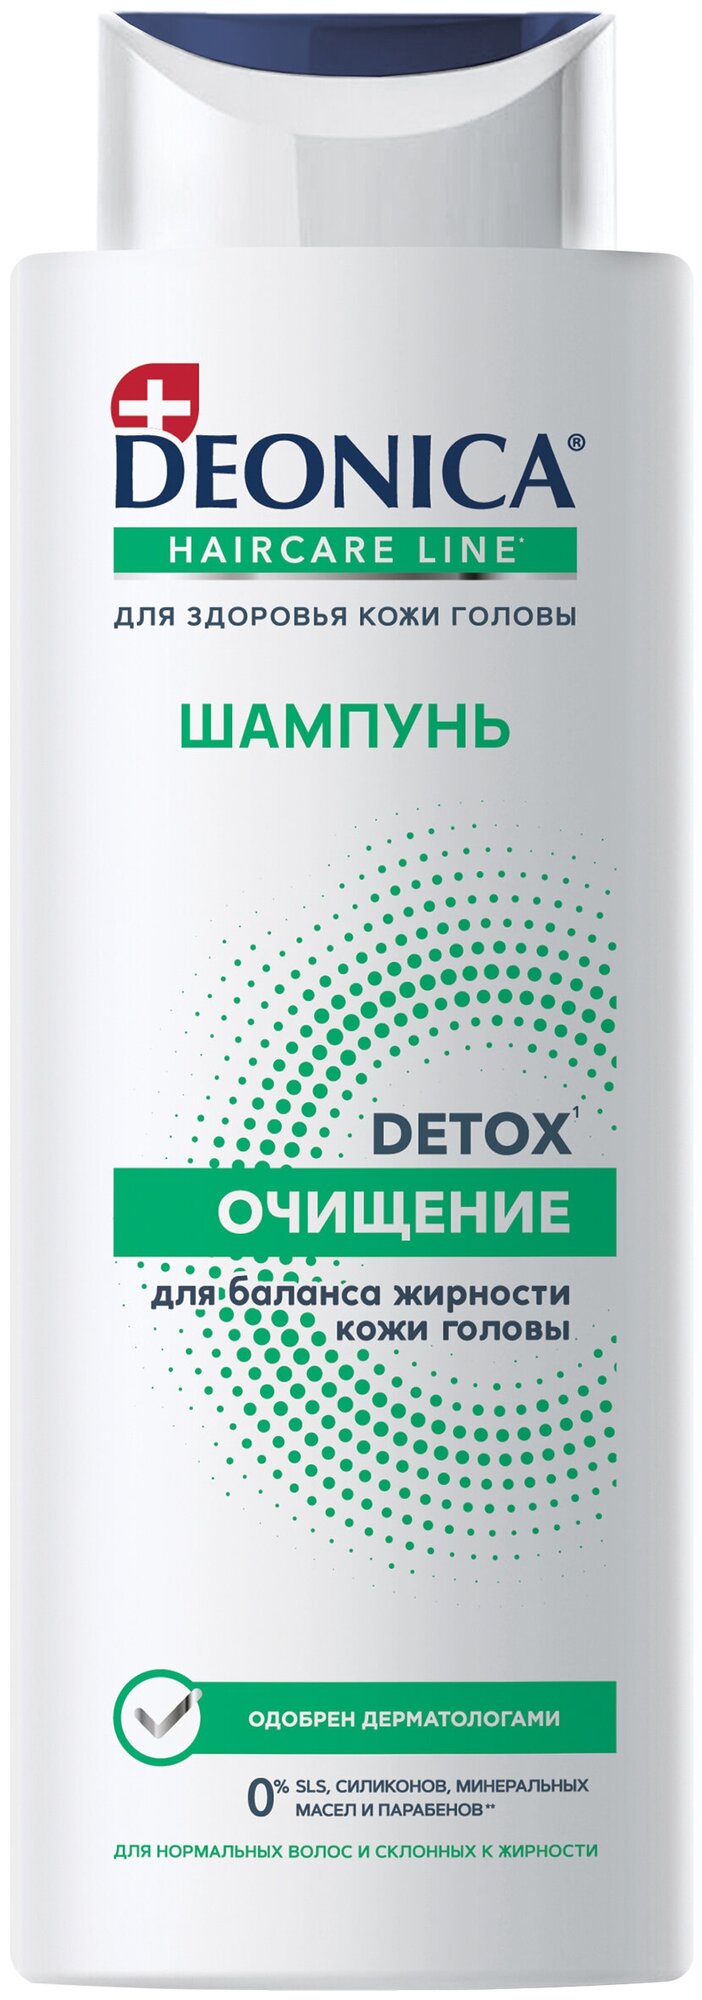 Шампунь для волос DEONICA Detox очищение 380мл 4650056499554 - фотография № 1